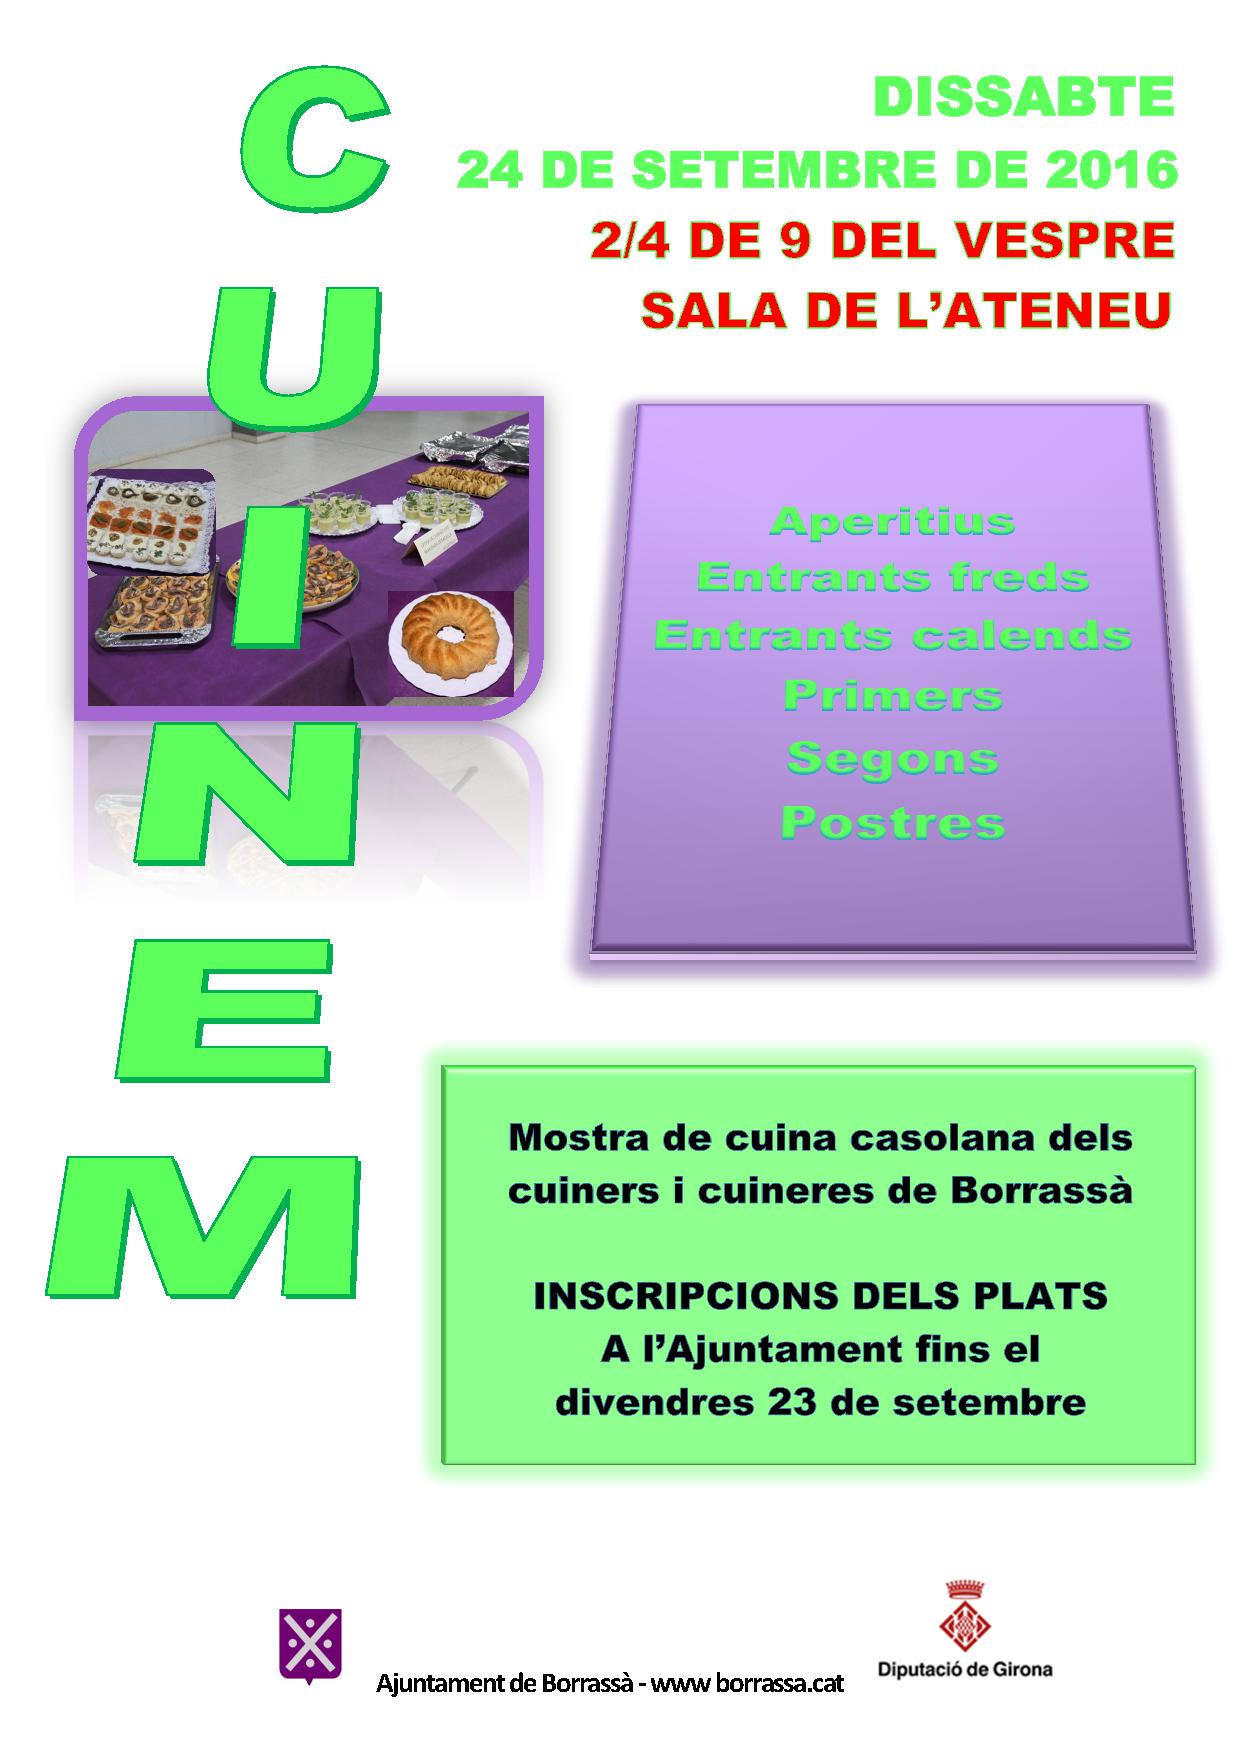 El proper dissabte, 24 de setembre, la Sala de l'Ateneu acollirà una nova edició del Cuinem!!!, la mostra i degustació de cuina casolana elaborada pels cuiners i cuineres de Borrassà.